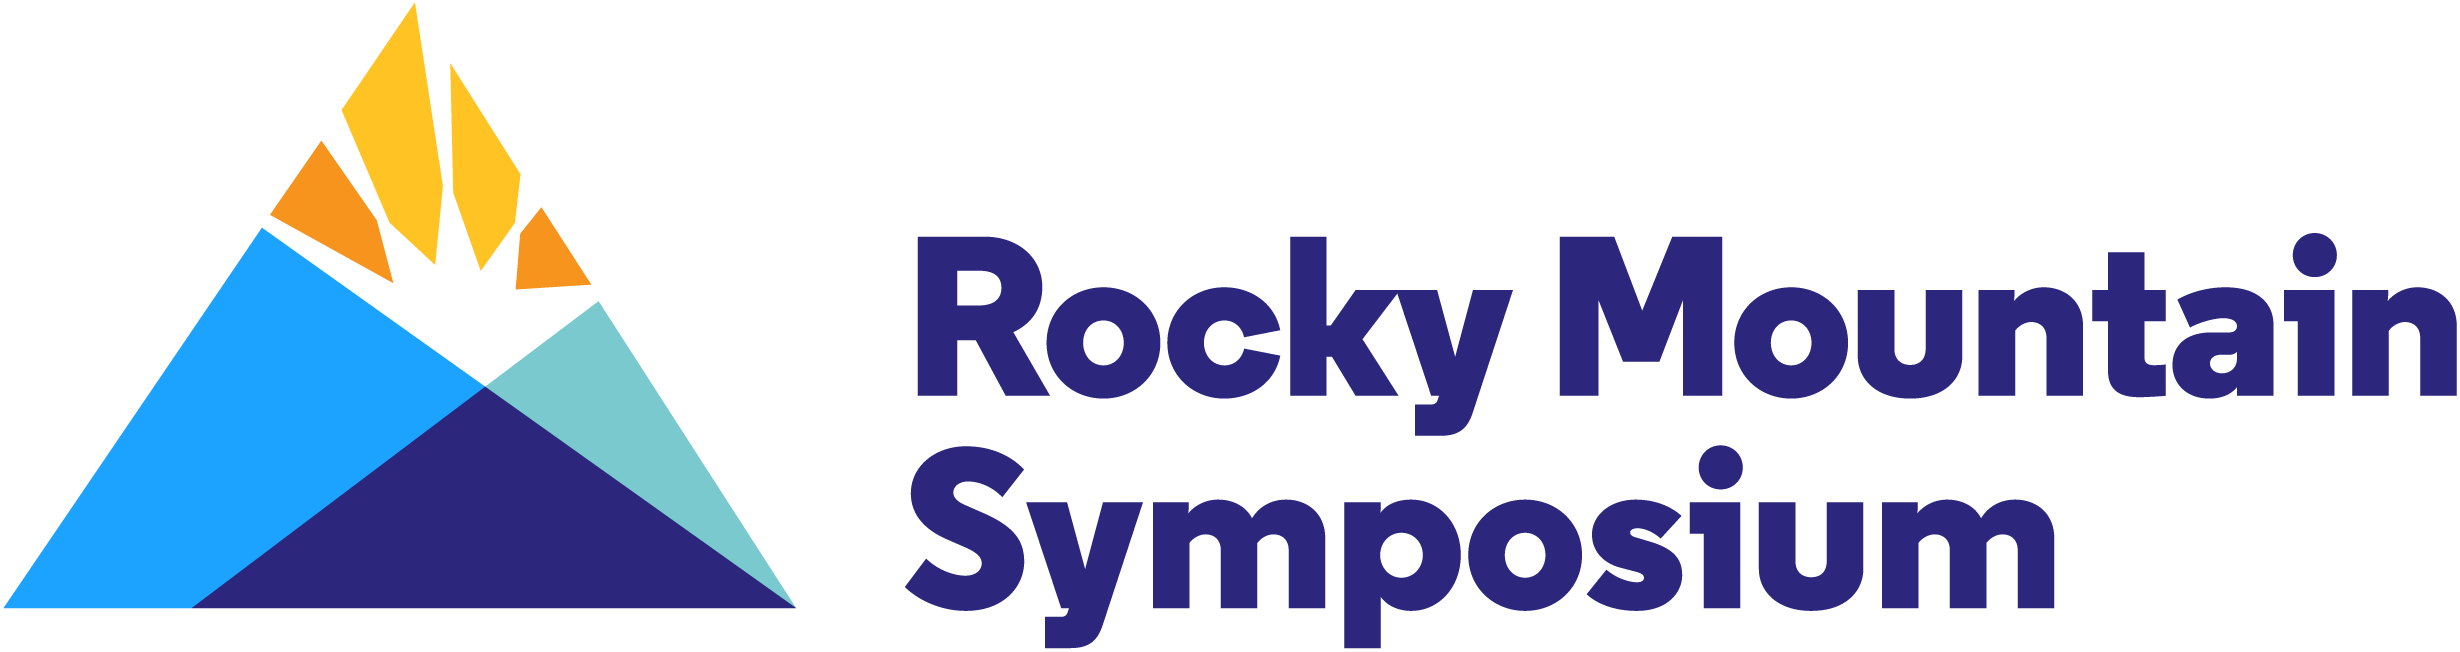 Rocky Mountain Symposium Logo